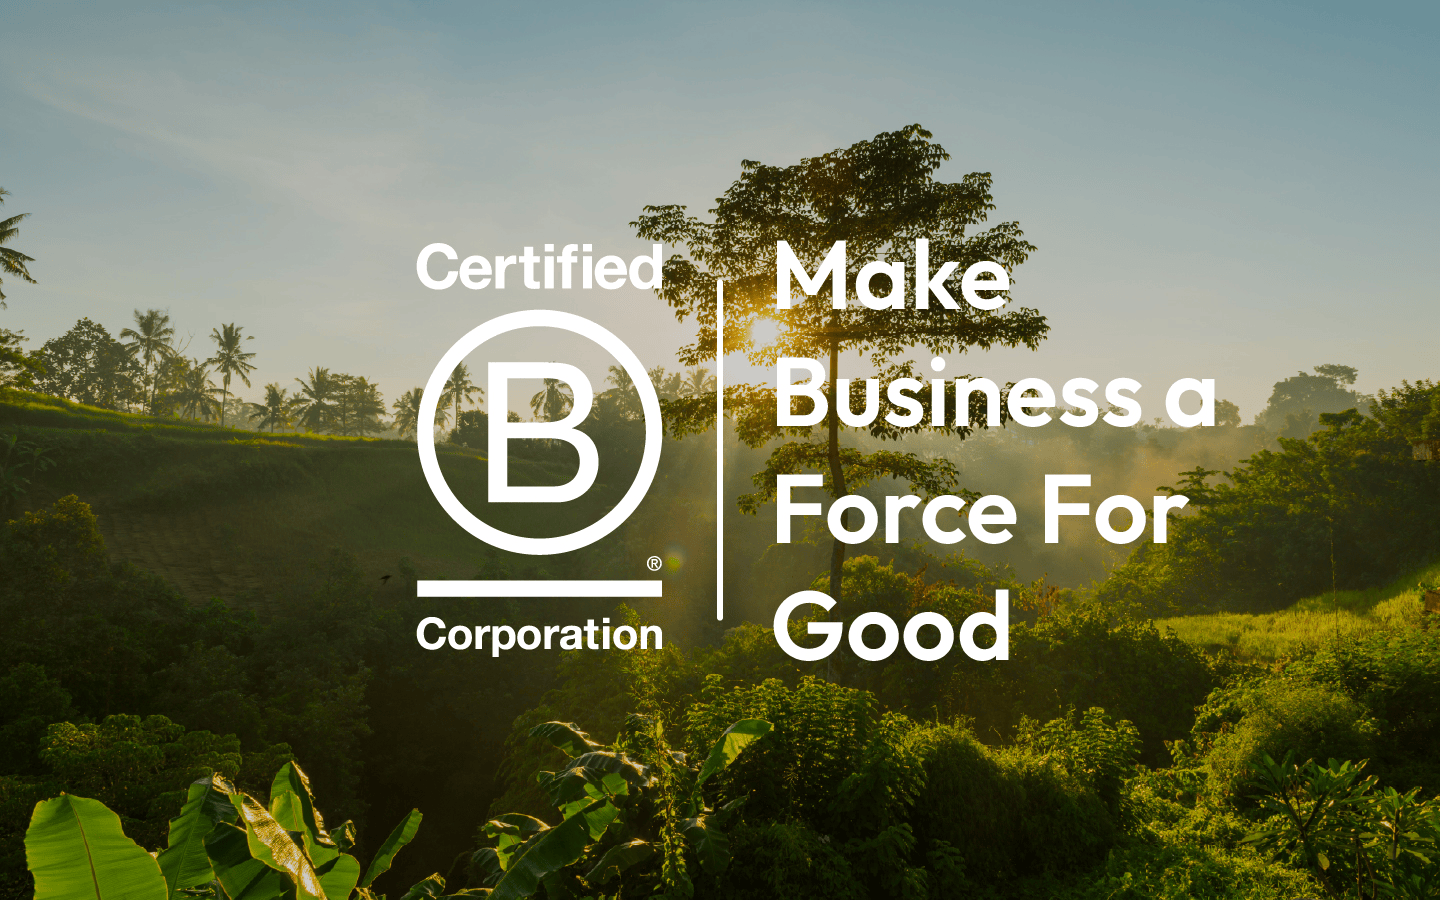 B Crop sertifikasyon logosunu ve mottosu olan "Make business a force for good" cümlesini içeren tasarım çalışması